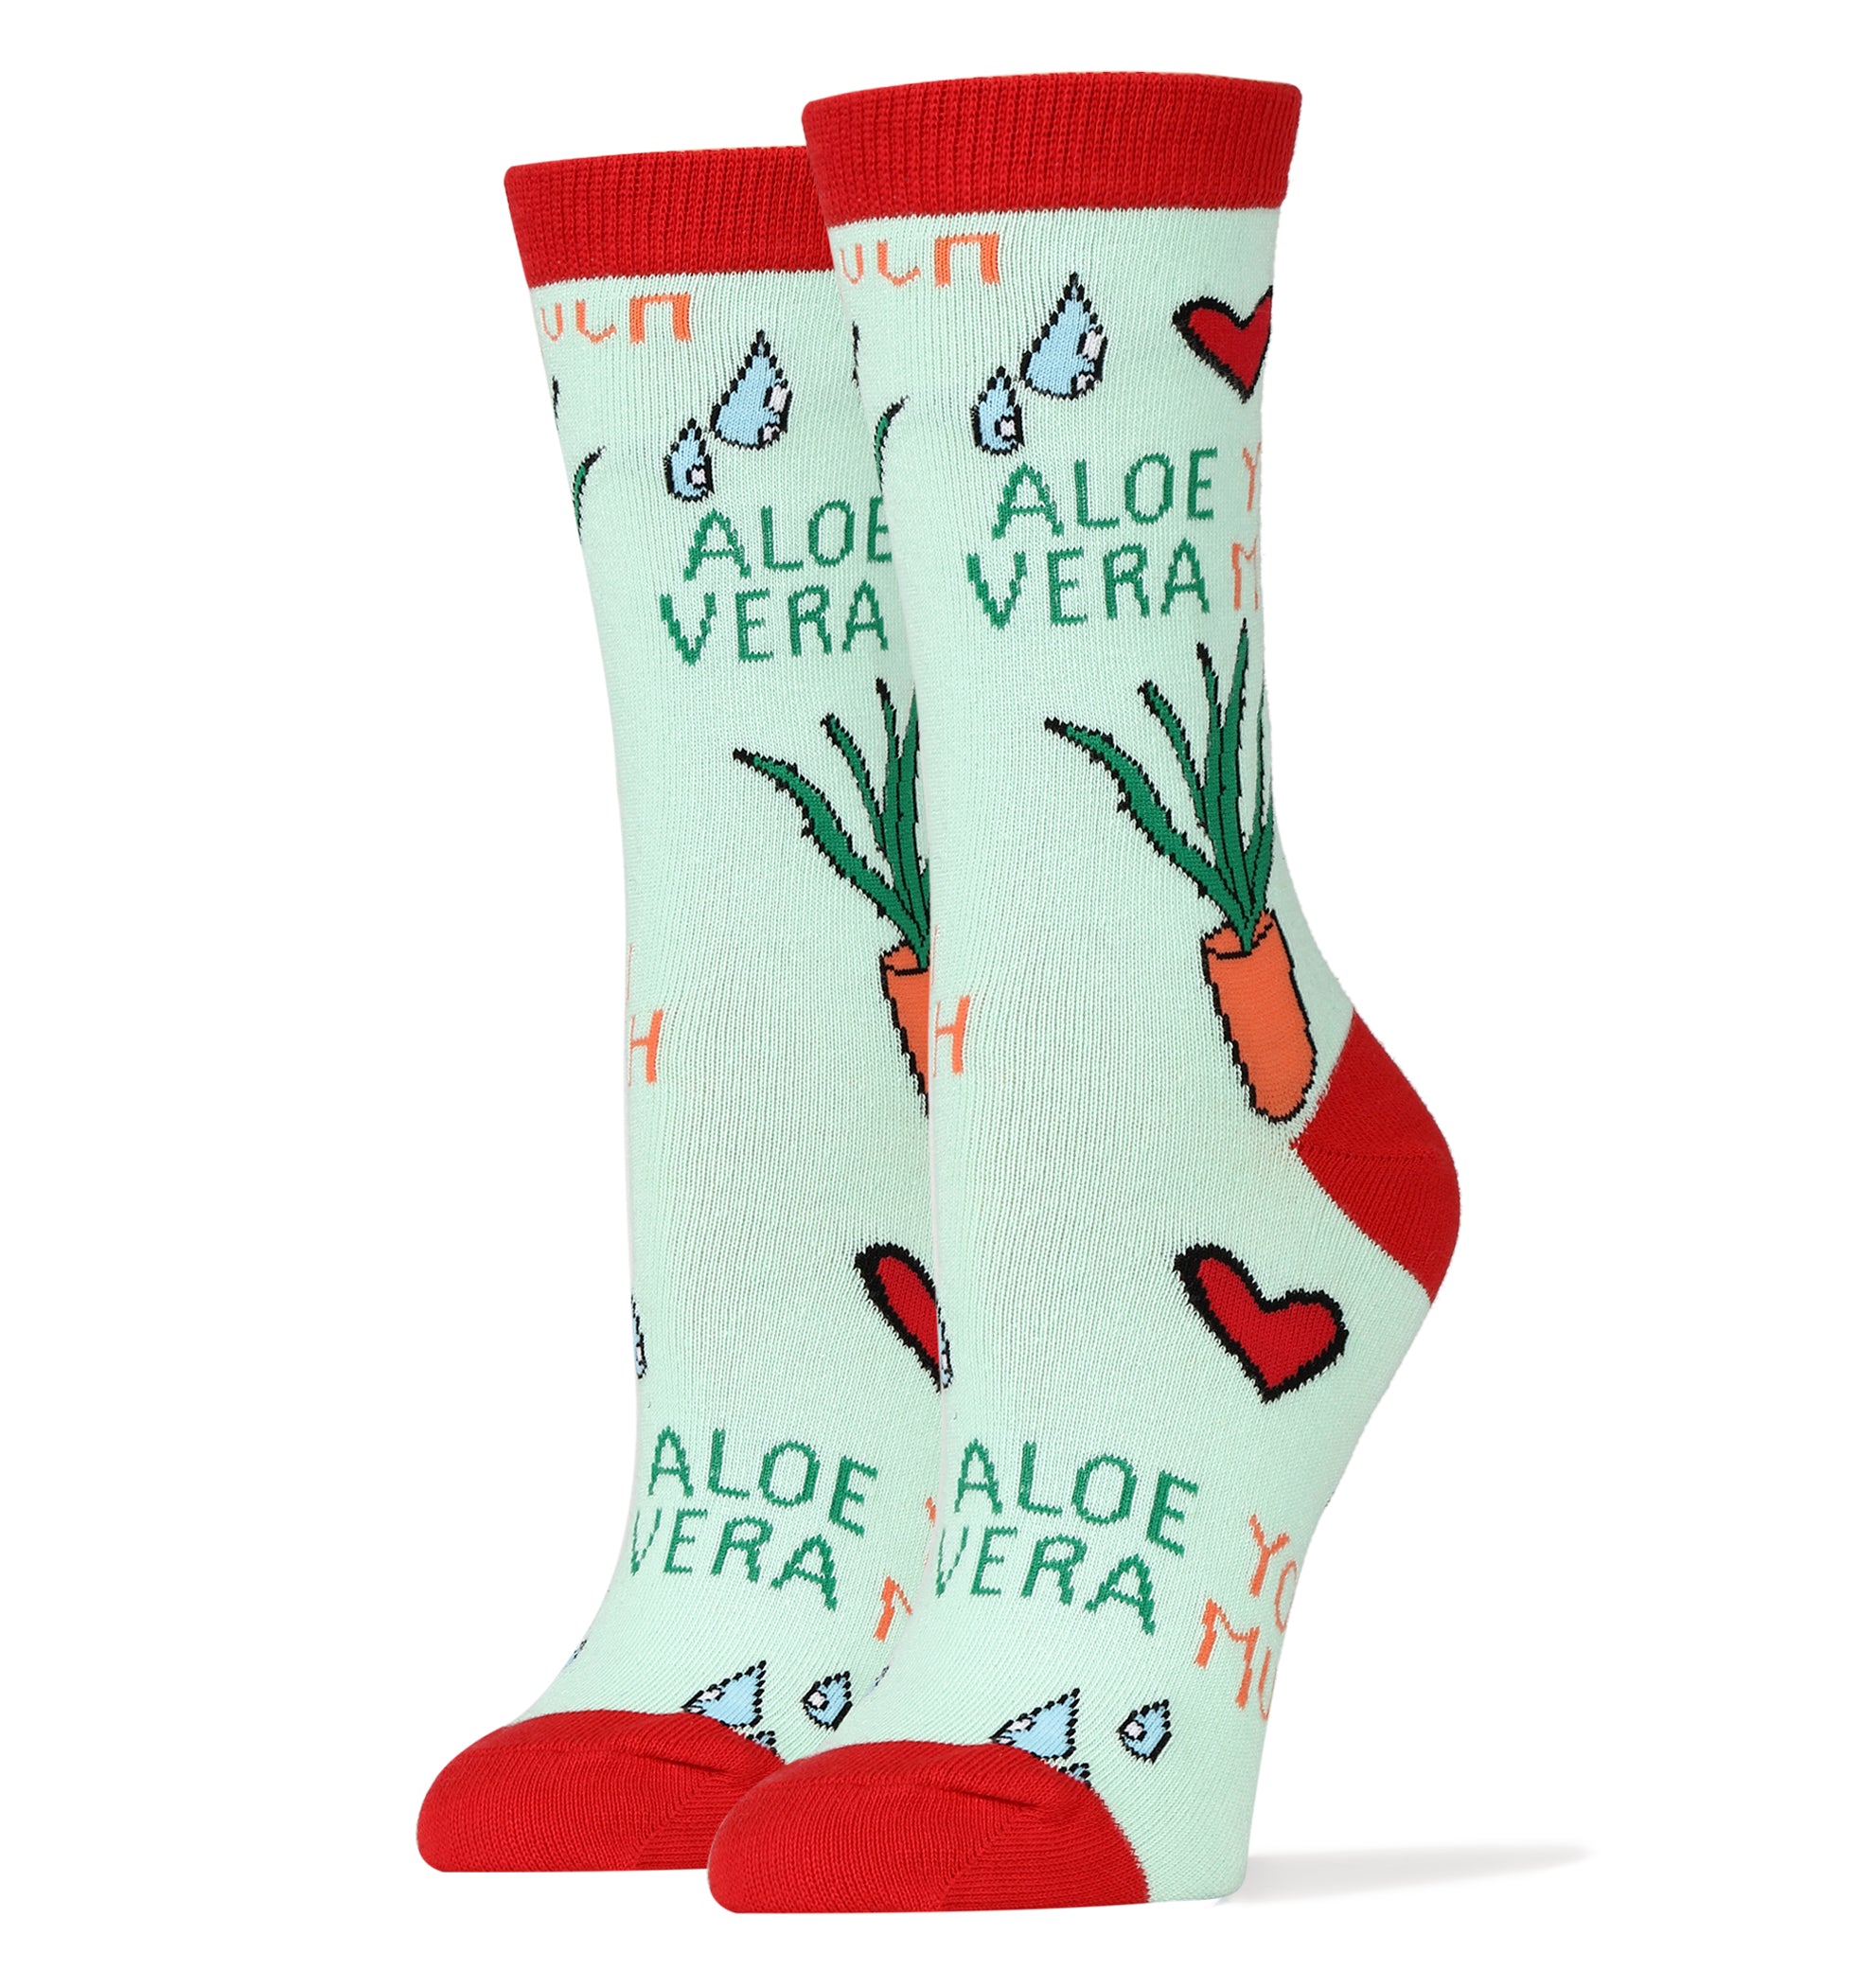 Aloe You Socks, Novelty Crew Socks For Women